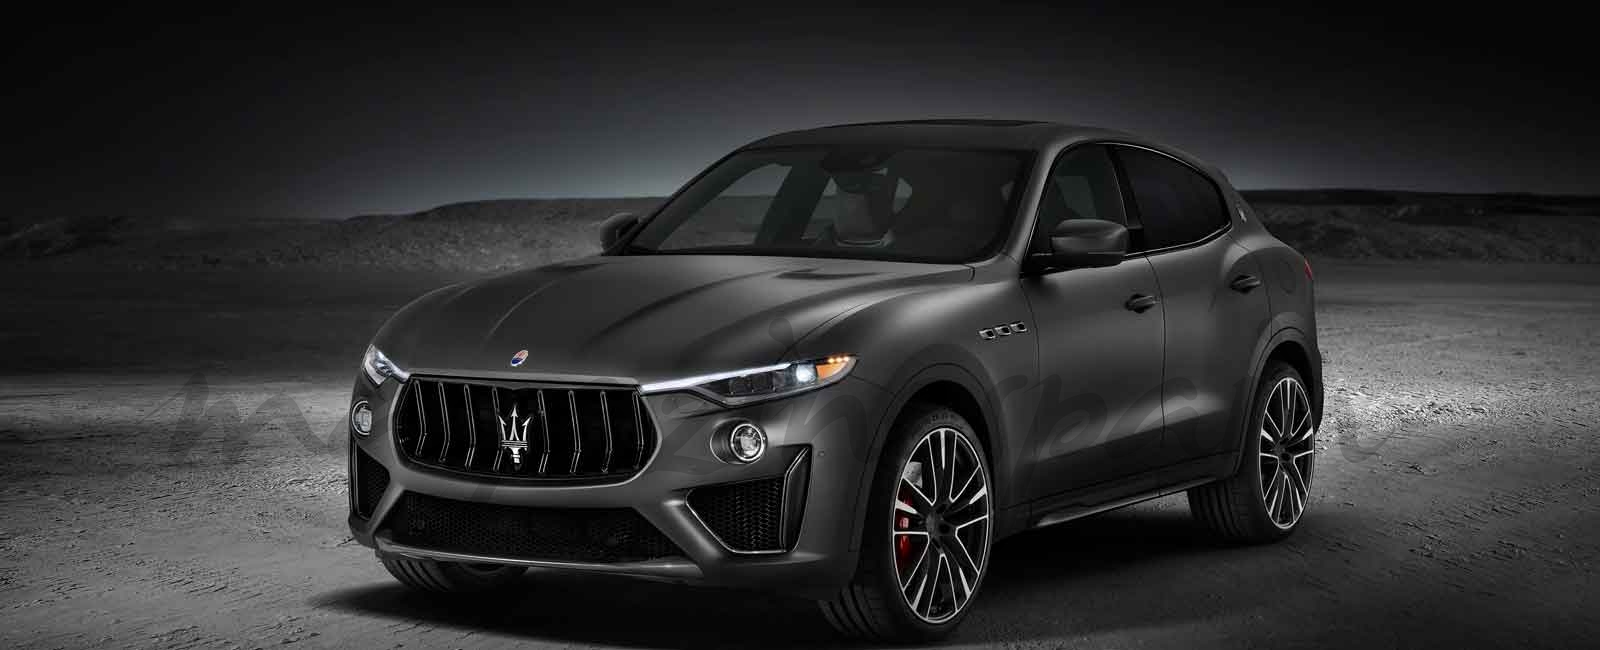 Estreno mundial del Maserati Levante